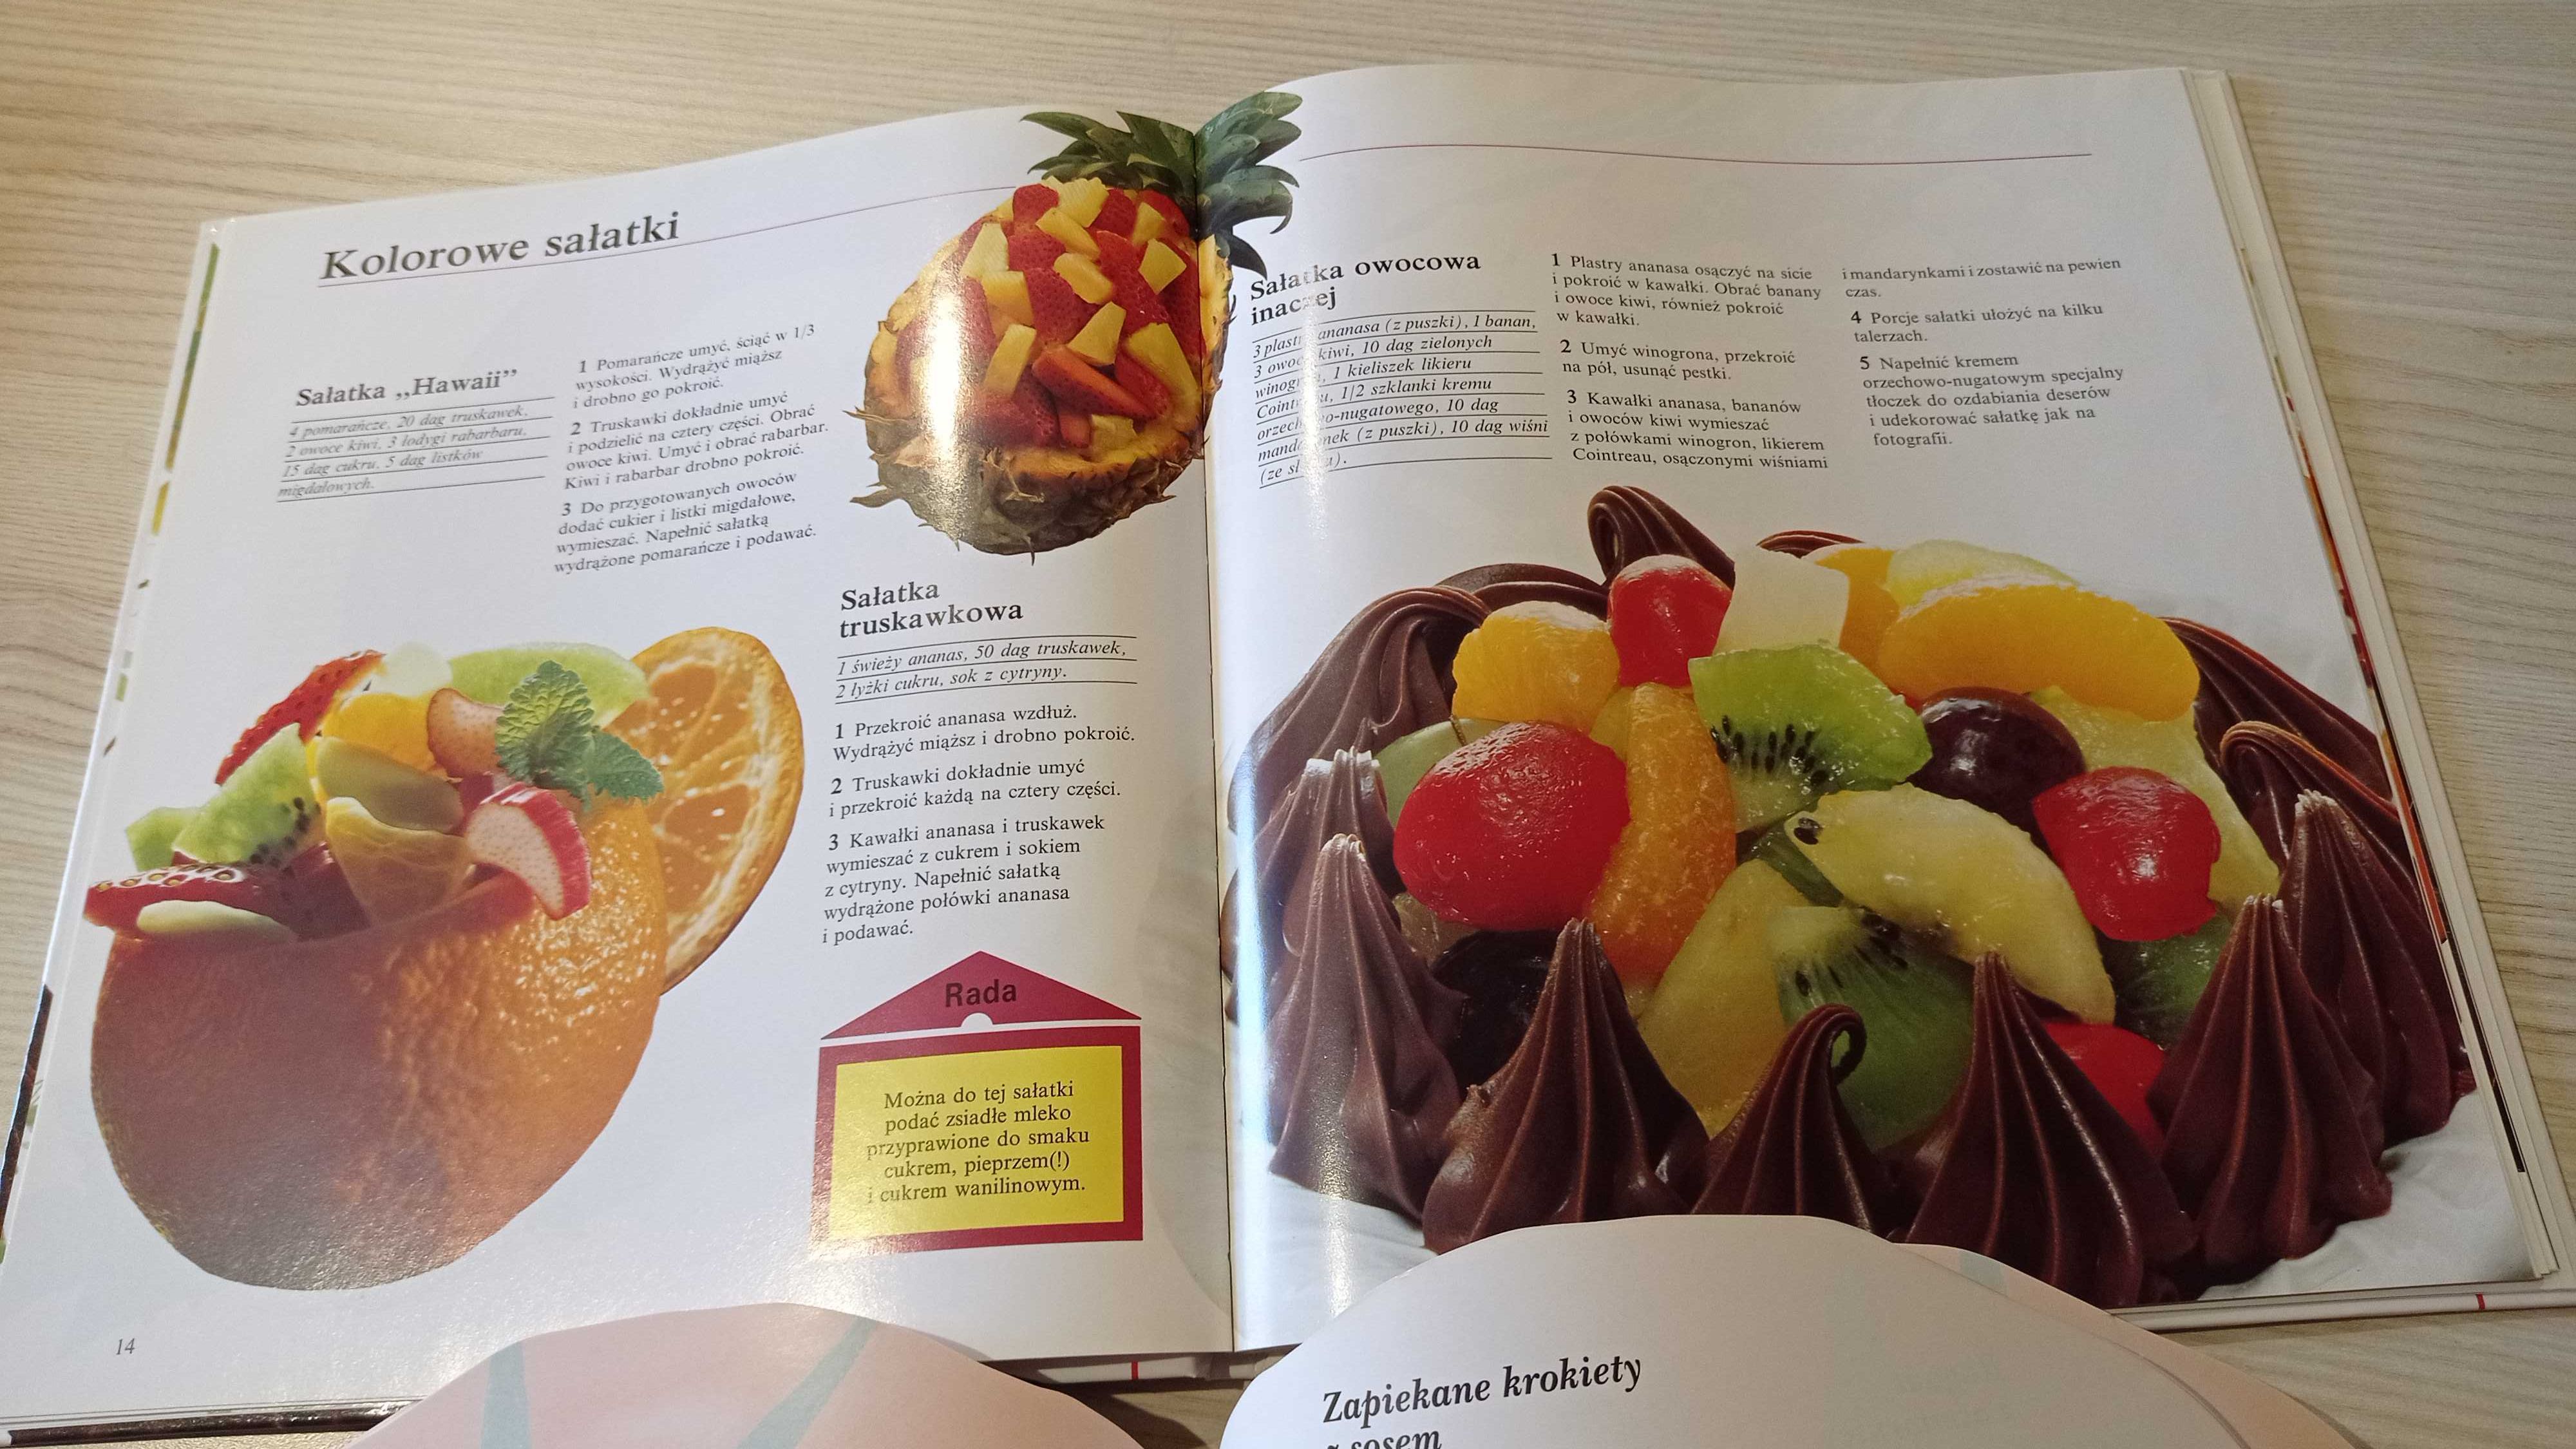 Książki kulinarne Ulubione Desery + Potrawy z Pomidorów, obie jak Nowe